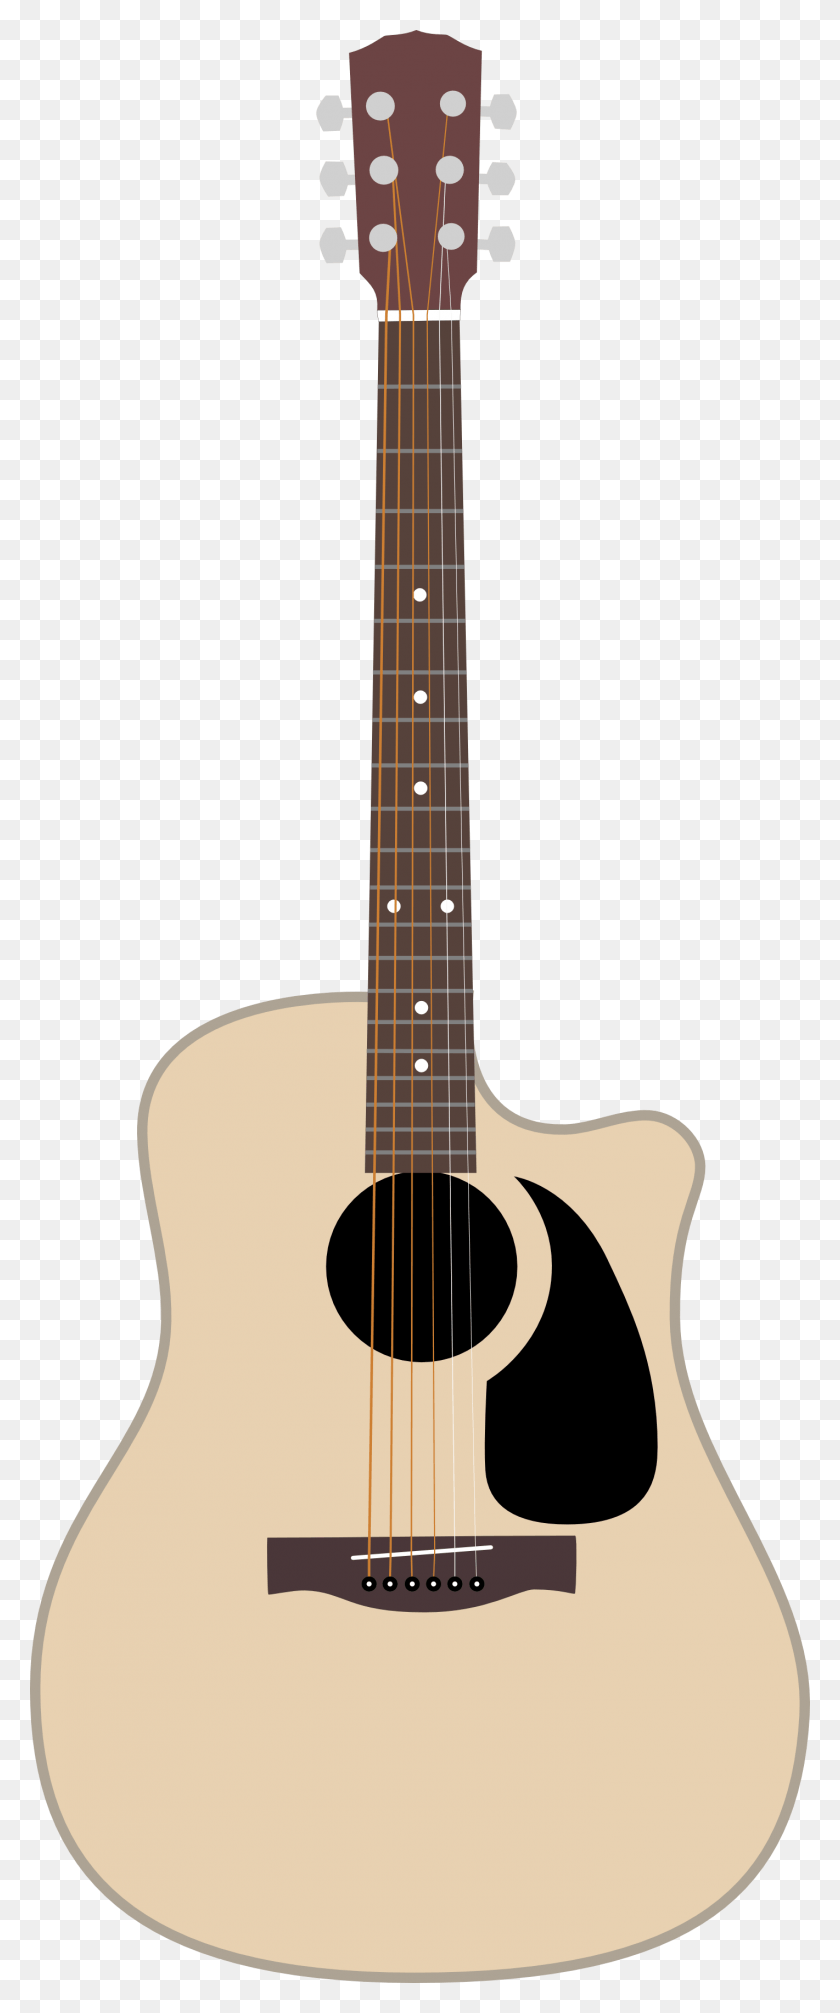 1421x3558 Descargar Png Fender Cd 100Ce Guitarra Acústica De Shimmerscroll Guitarra Acústica, Actividades De Ocio, Instrumento Musical, Mandolina Hd Png